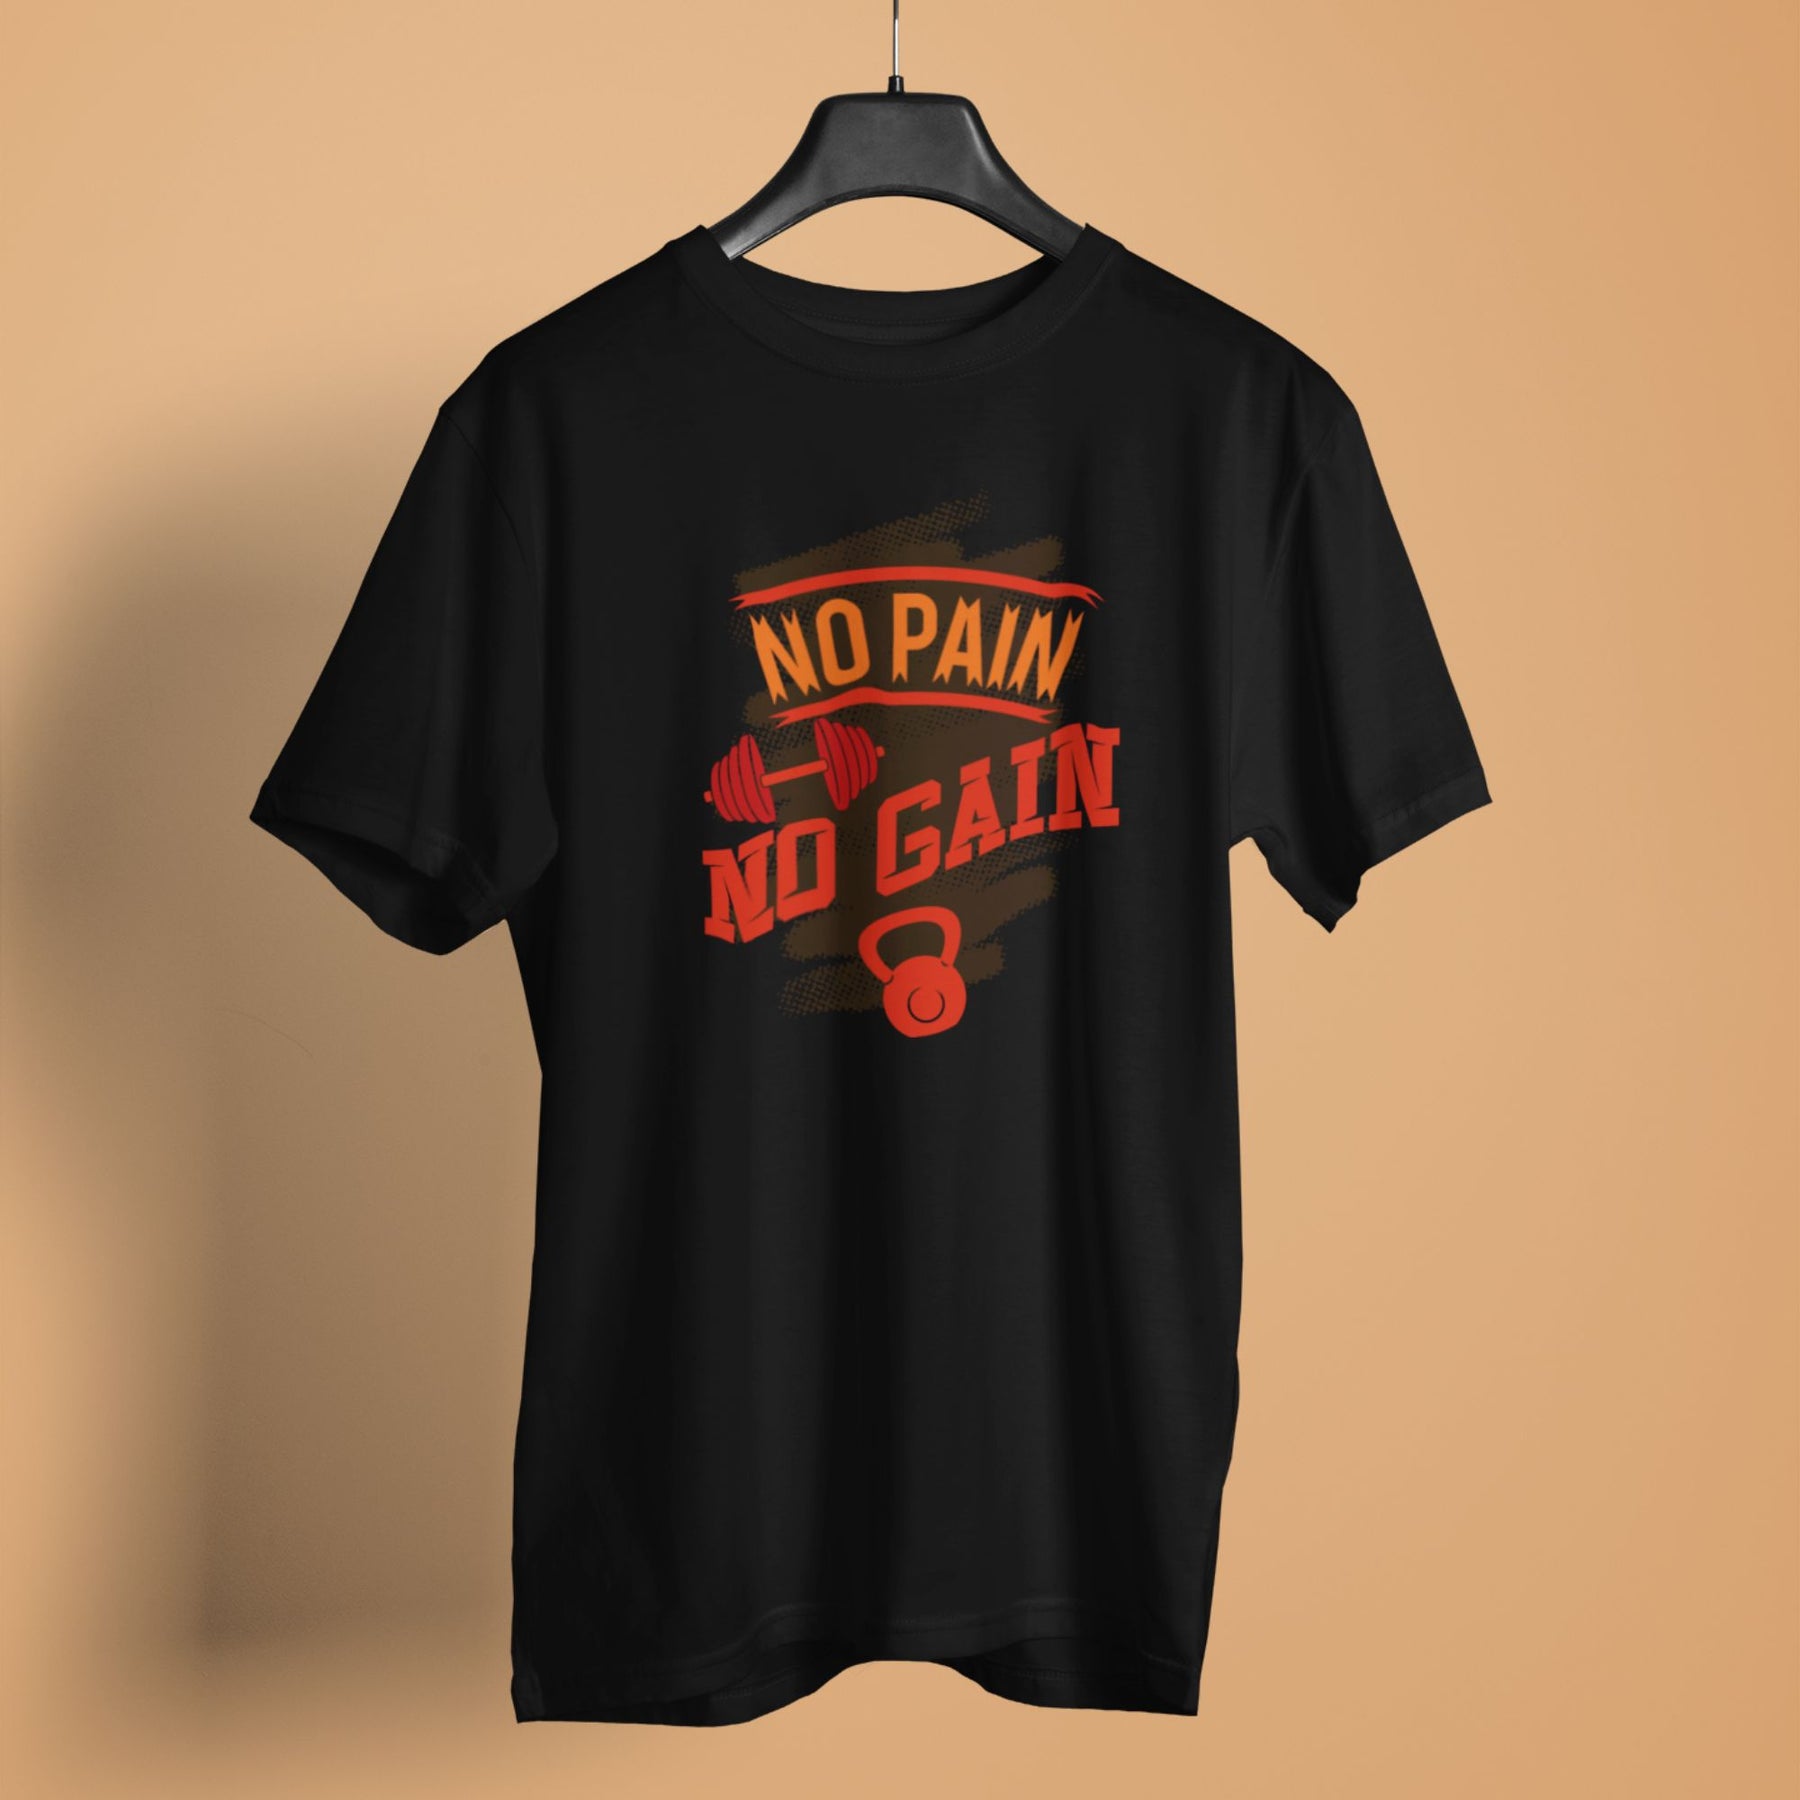 No pain no gain men t-shirt